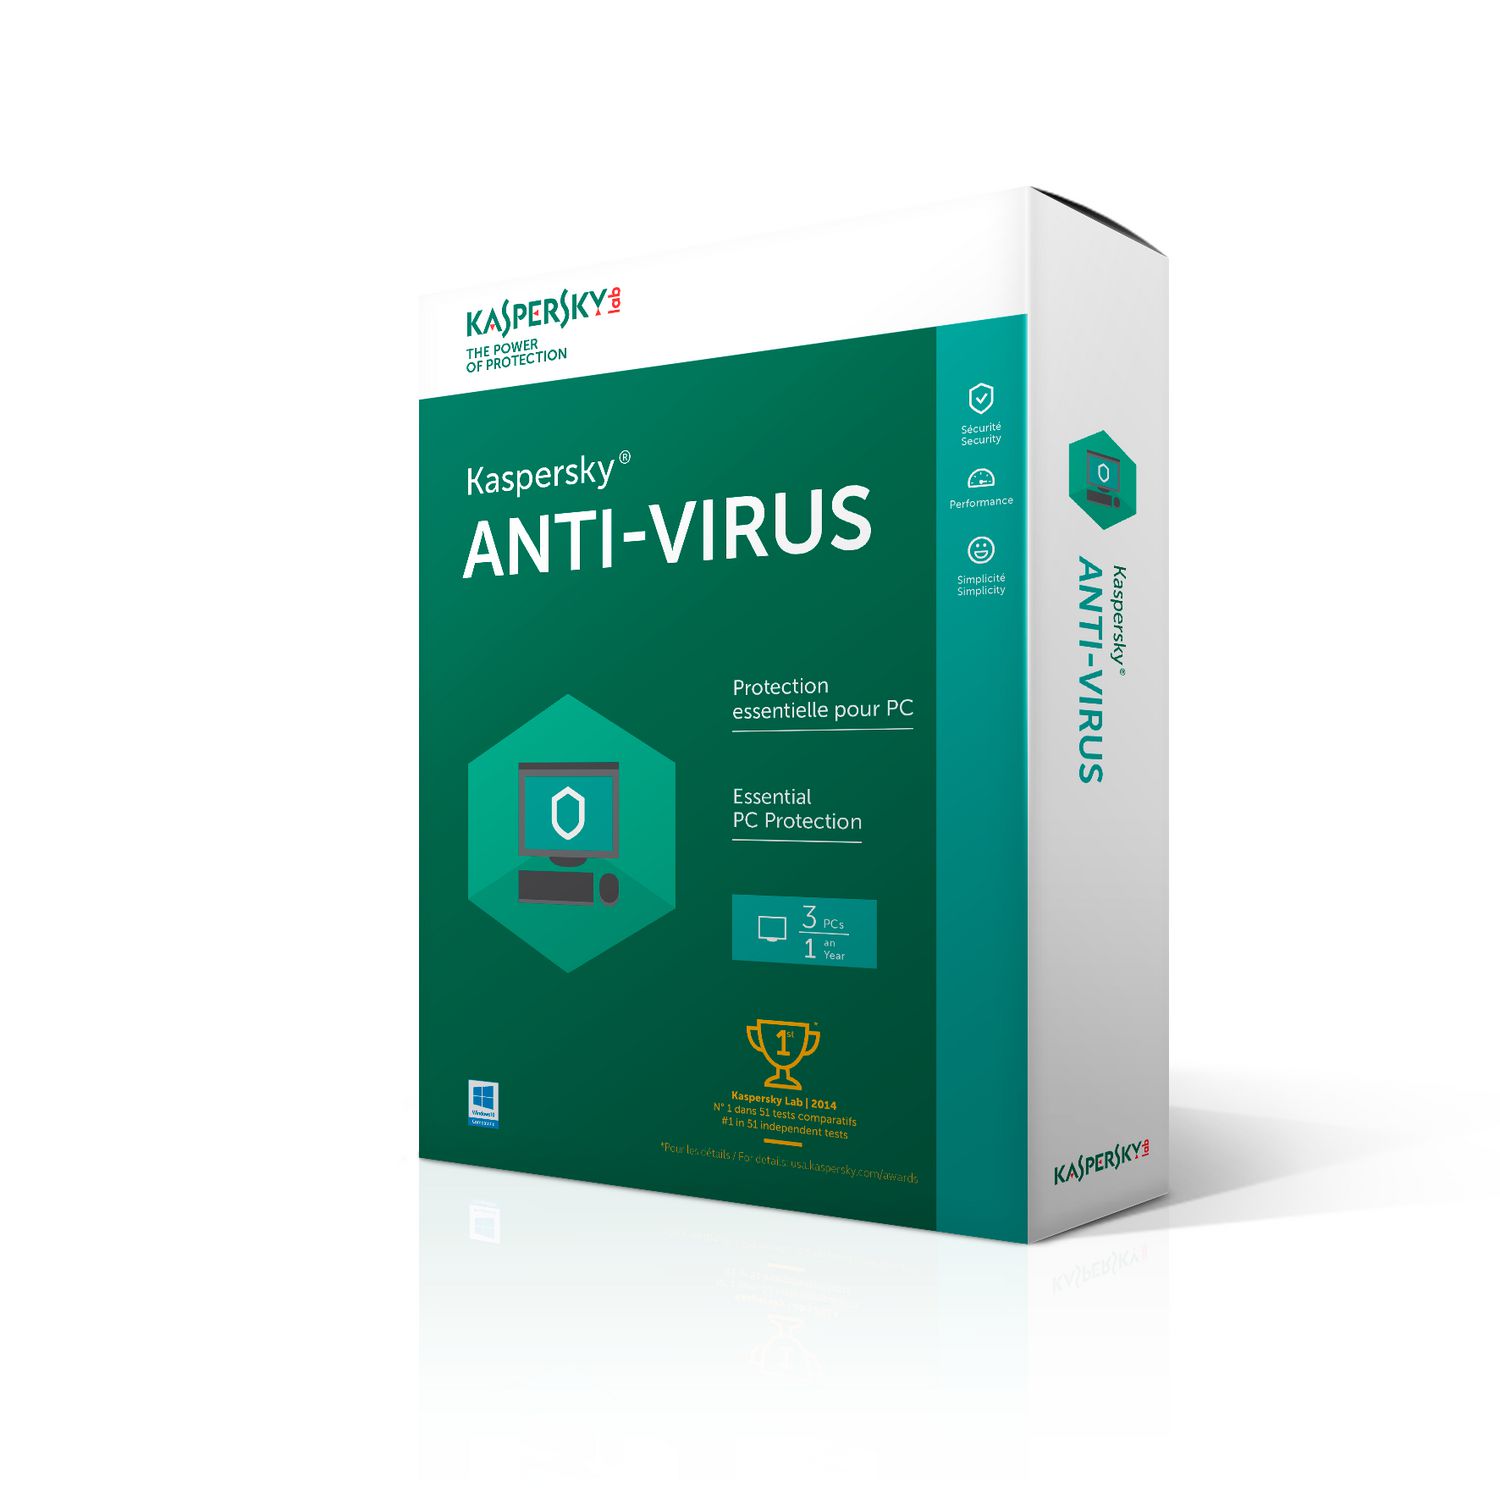 Antivirus : Les meilleurs conseils possibles afin de vous aider à choisir un antivirus qui vous convient